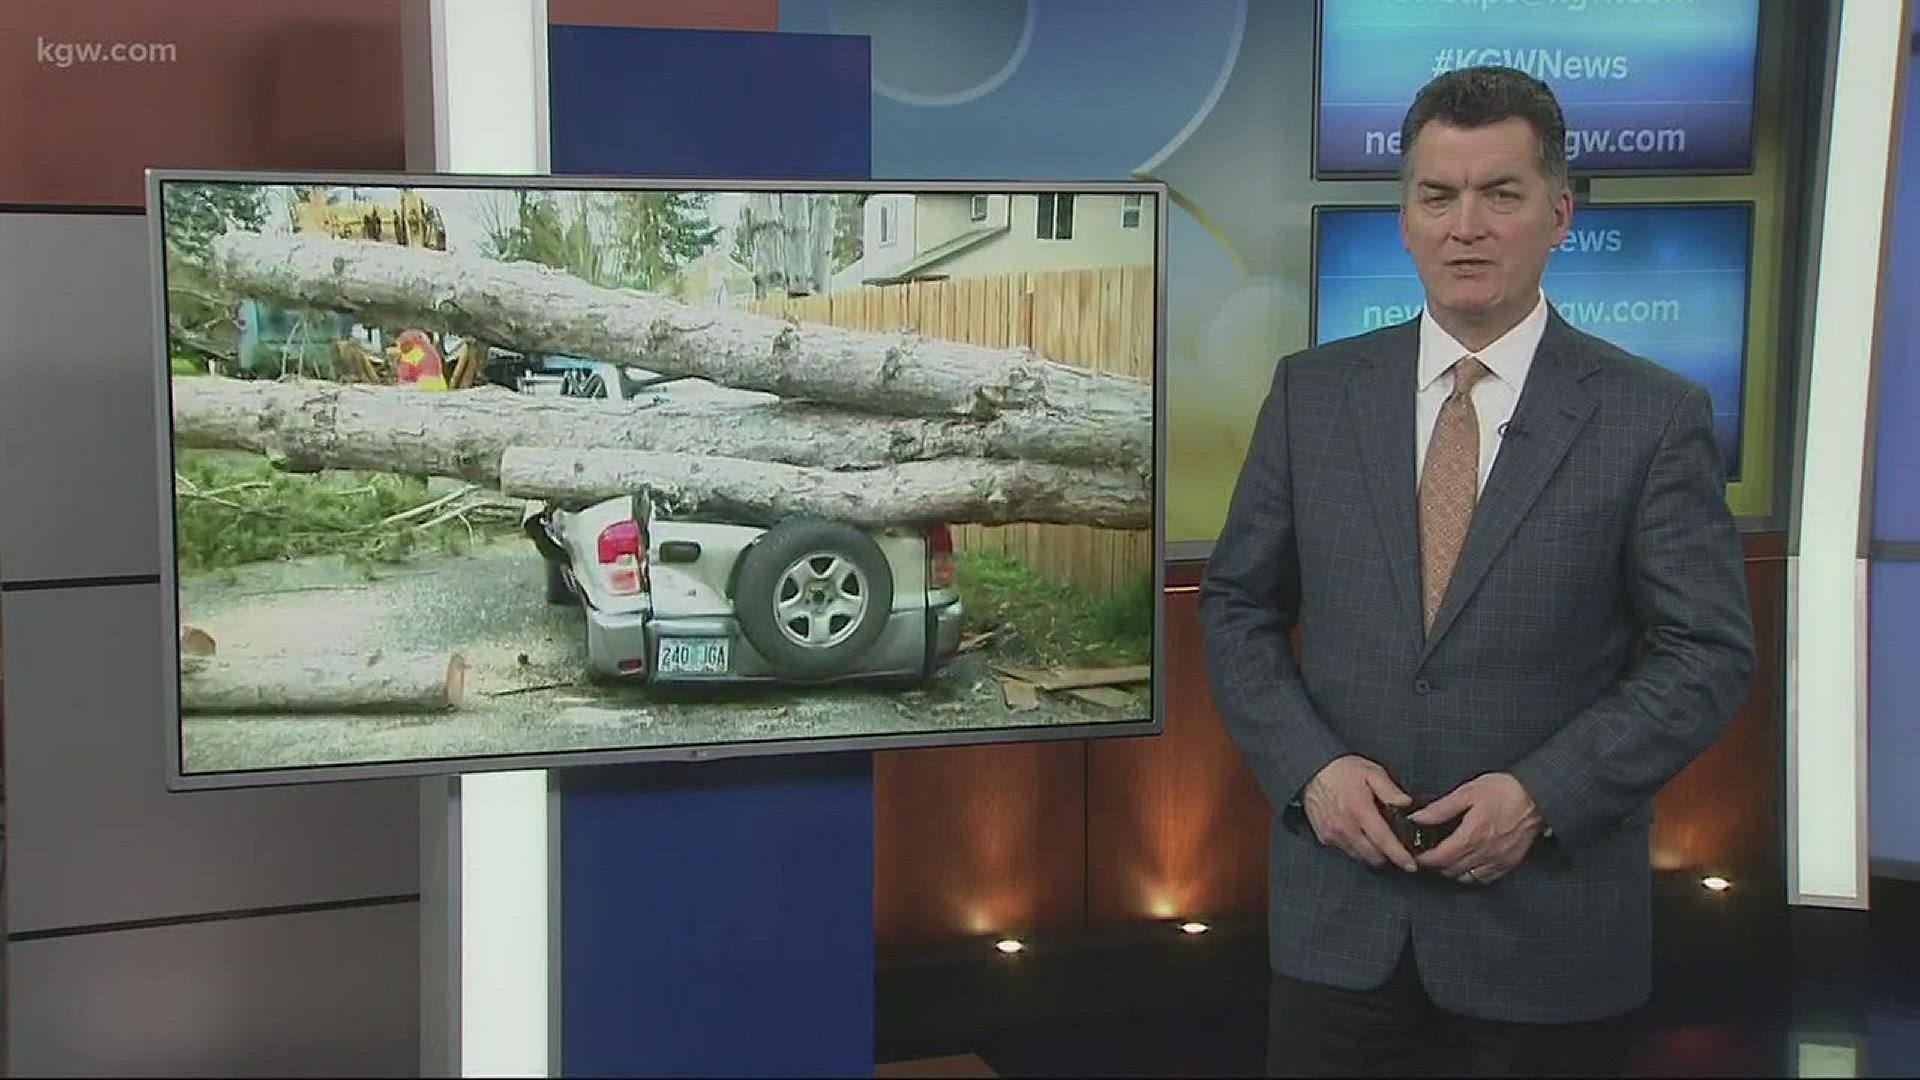 Tree falls in Cornelius, crushes car